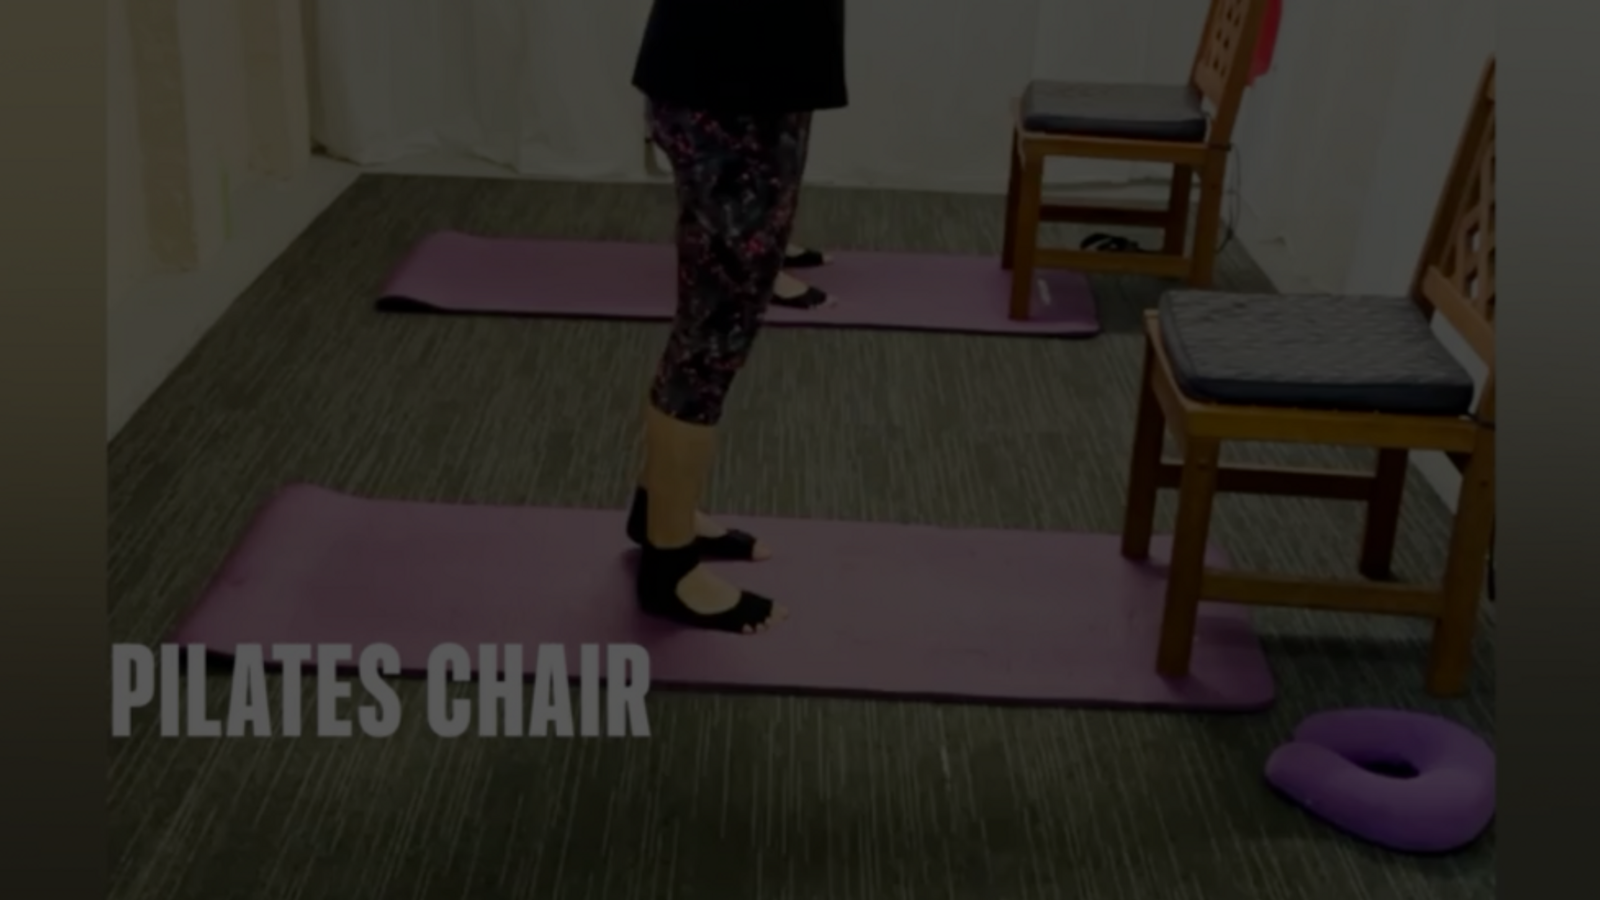 Pilates - Chair